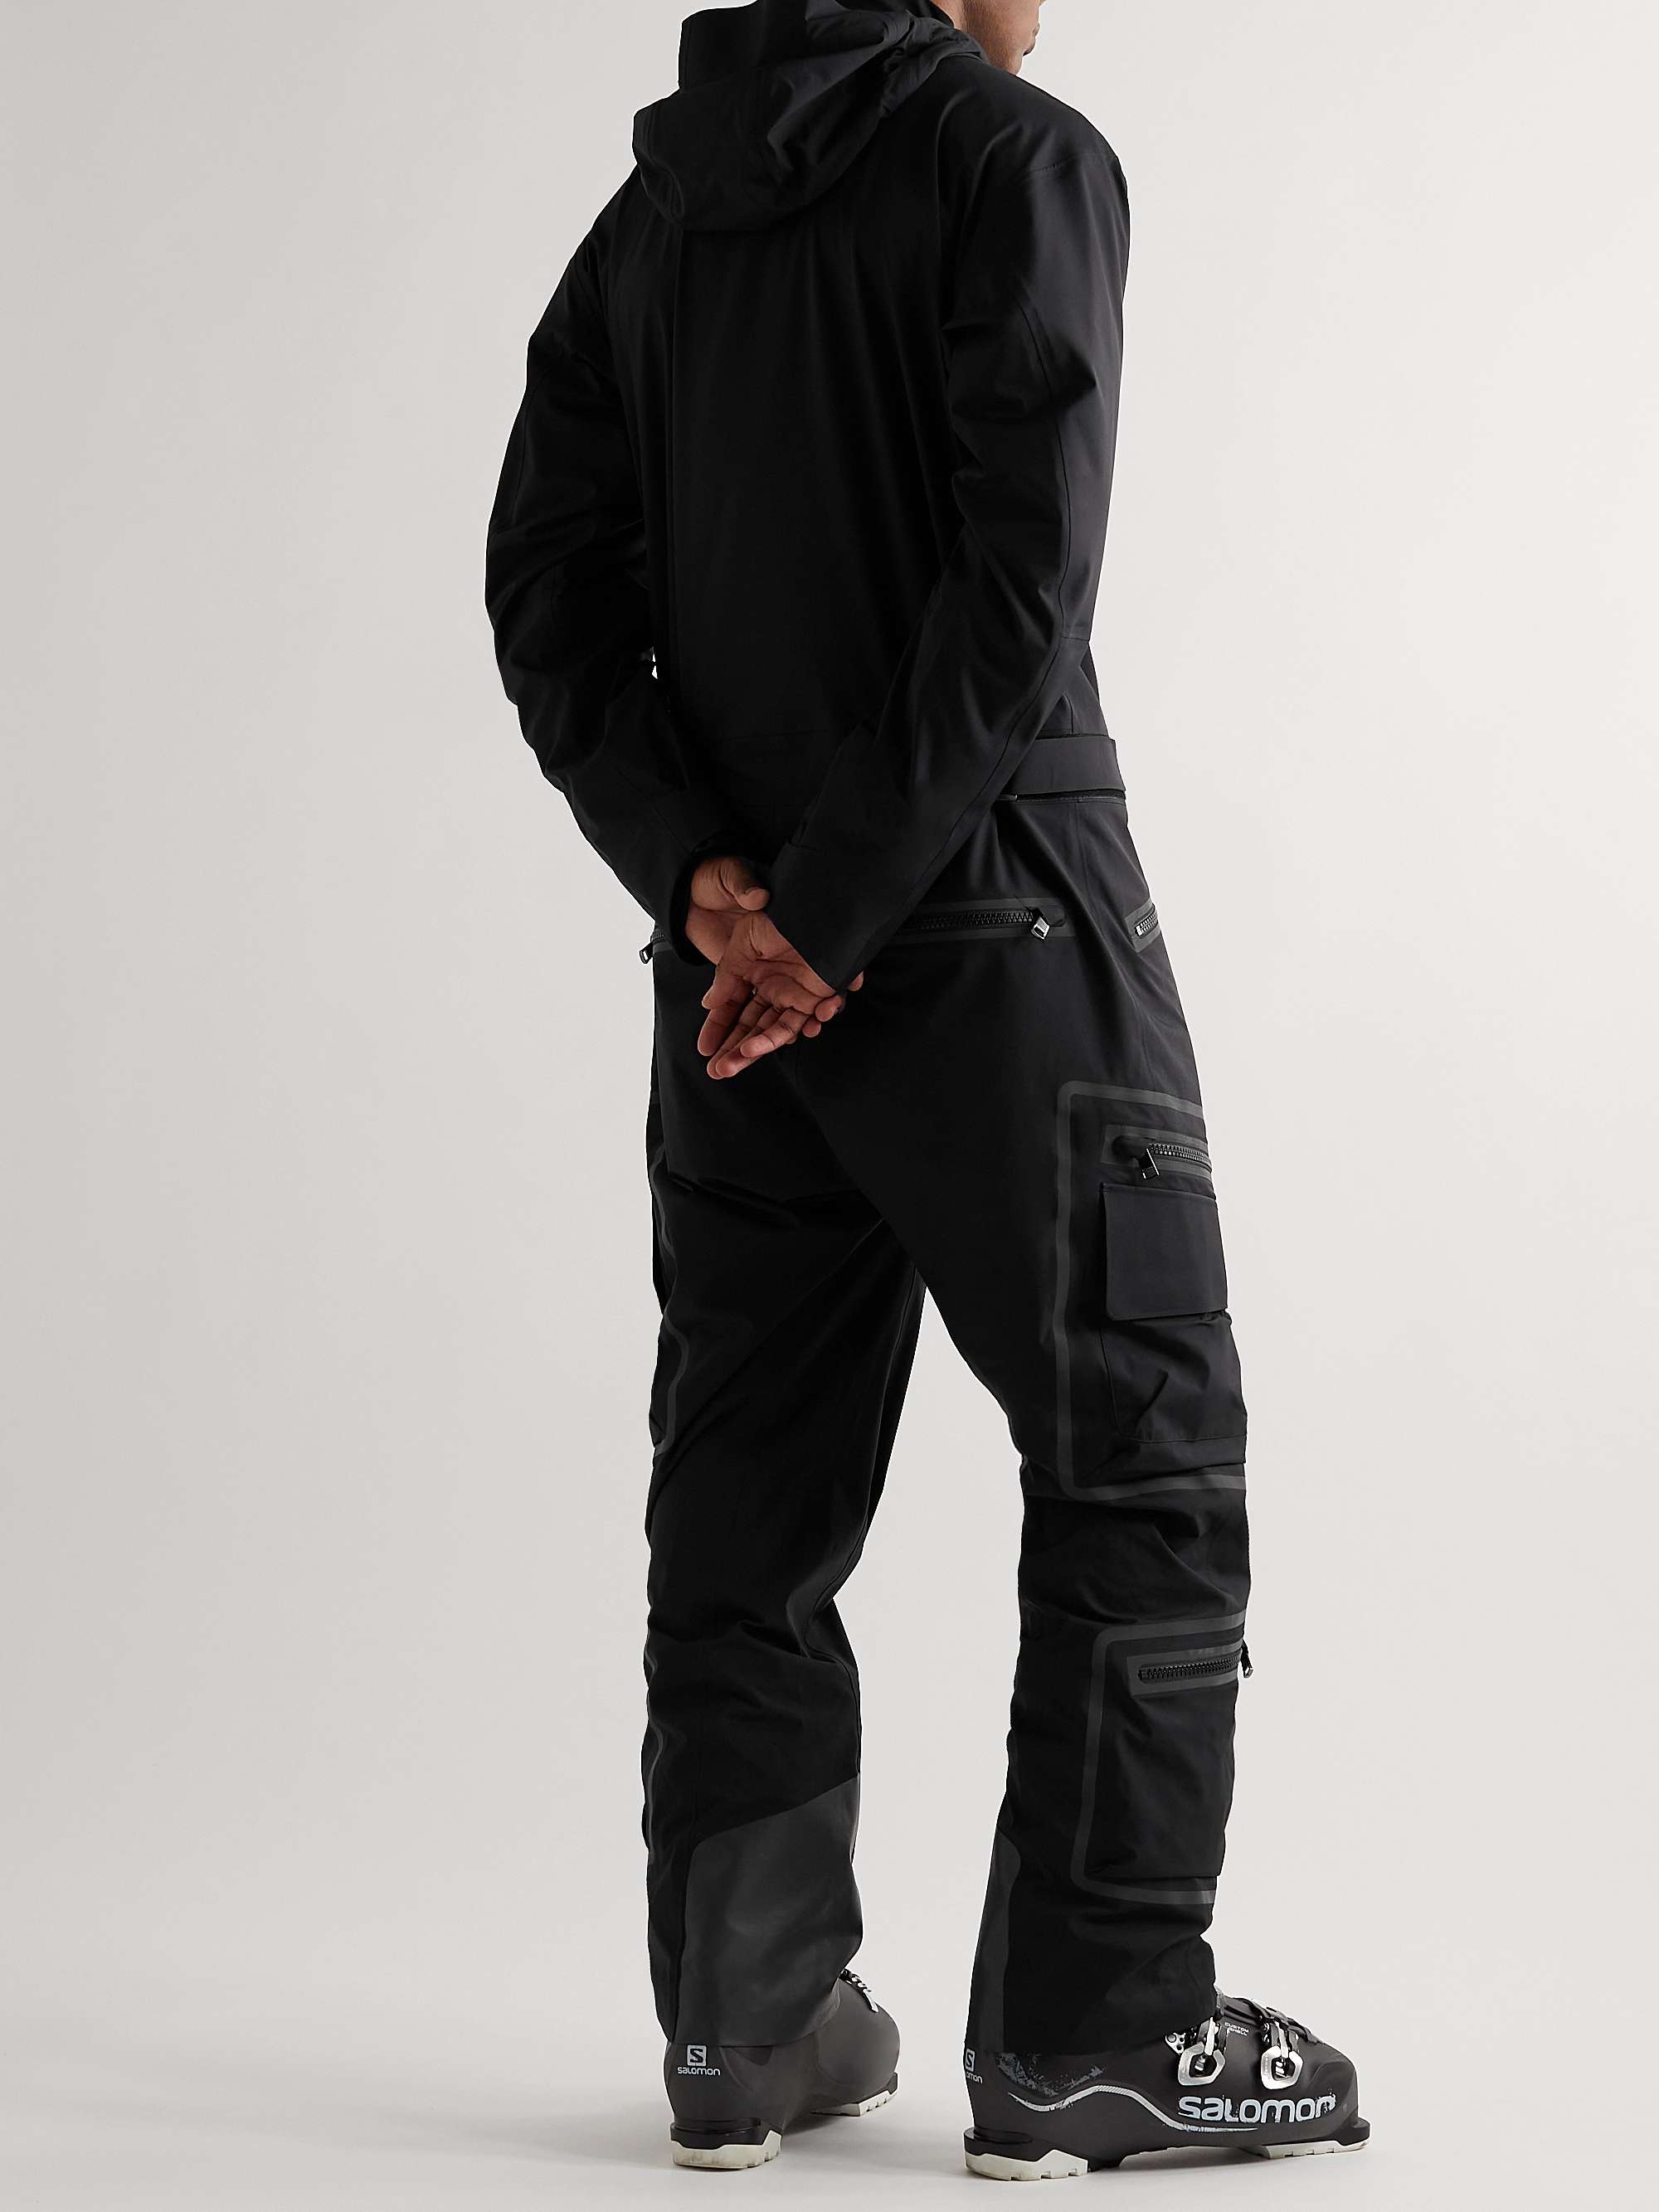 BOGNER + 007 Bode-T Hooded Ski Suit